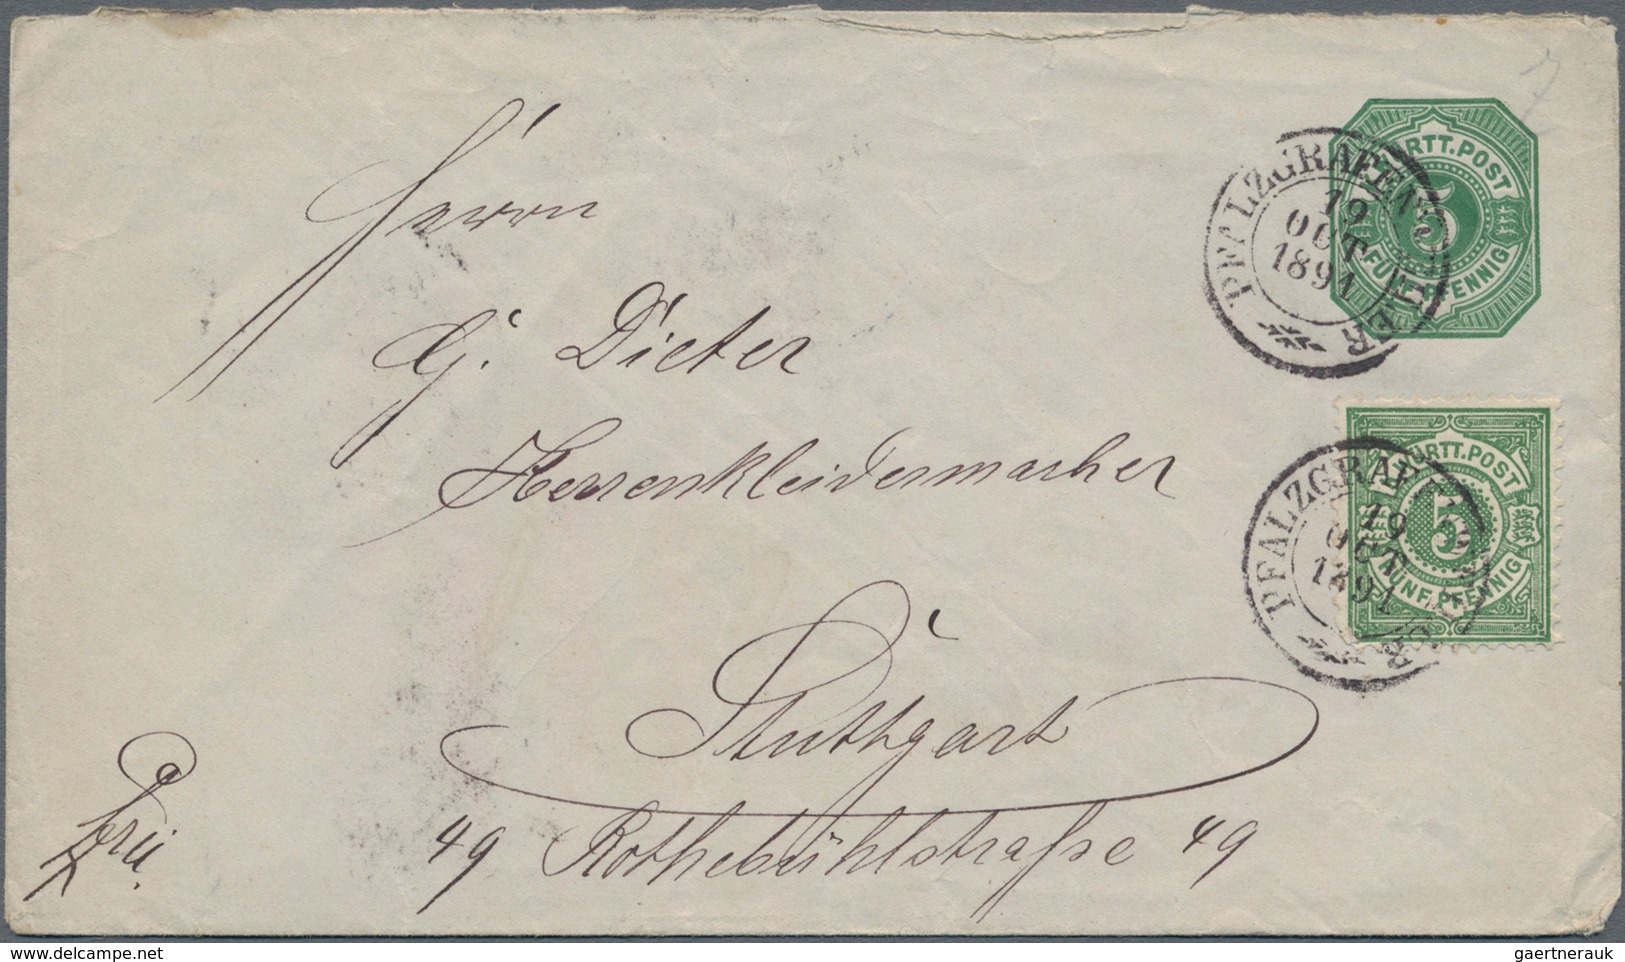 Württemberg - Marken und Briefe: 1850/1920, vielseitige Partie von ca. 120 Briefen, Karten und Ganzs